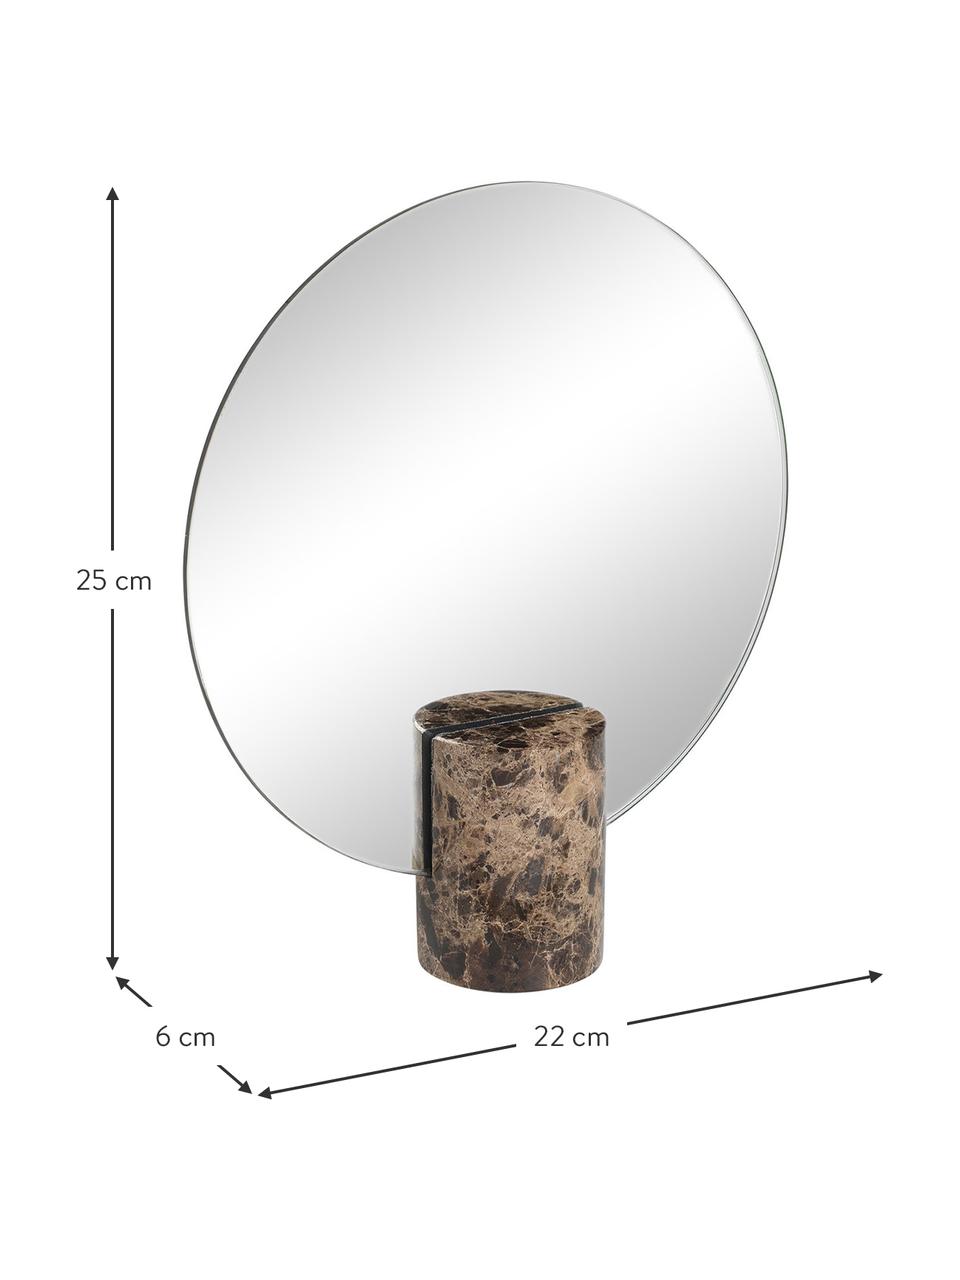 Rahmenloser Kosmetikspiegel Pesa, Spiegelfläche: Spiegelglas, Sockel: Marmor, Braun, 22 x 25 cm